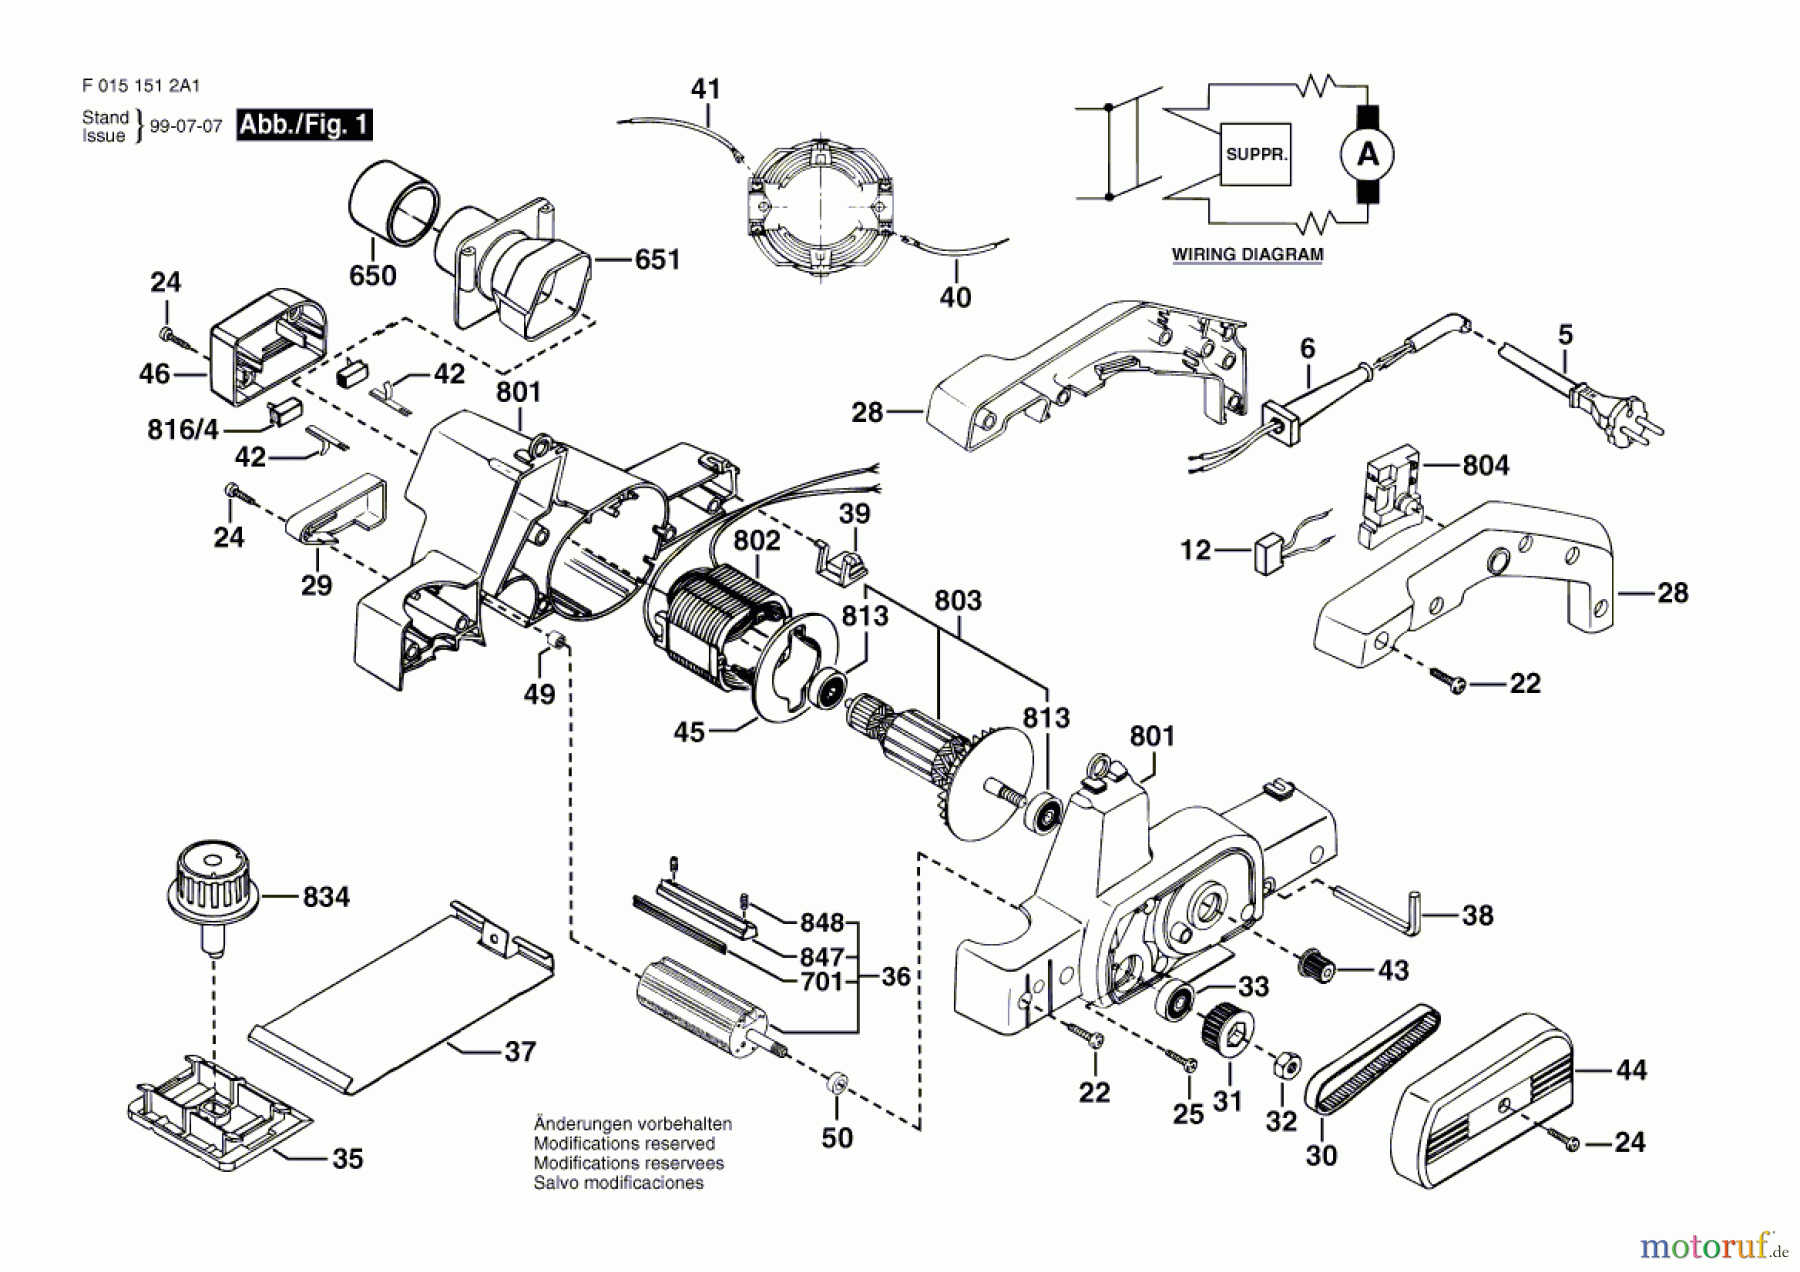  Bosch Werkzeug Handhobel 1512 Seite 1